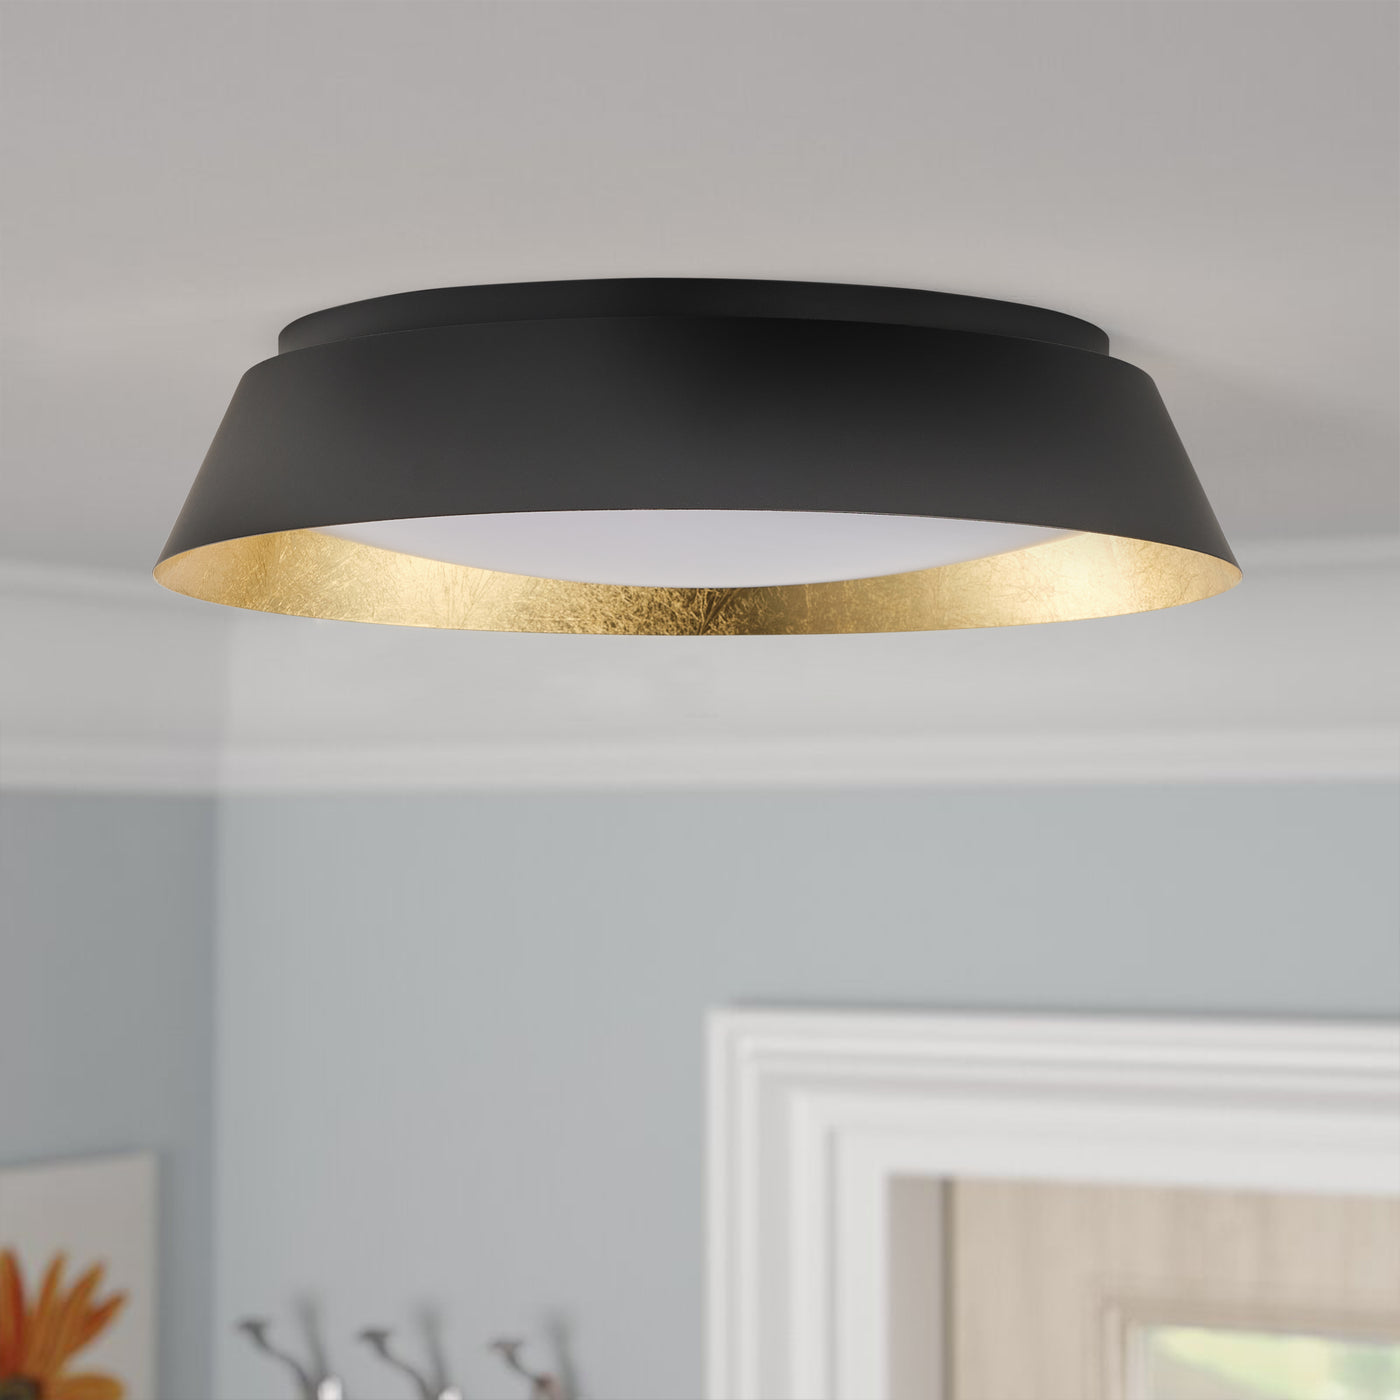 1-Light Modern Style Black Finish Dimmable LED Flush Mount Lighting